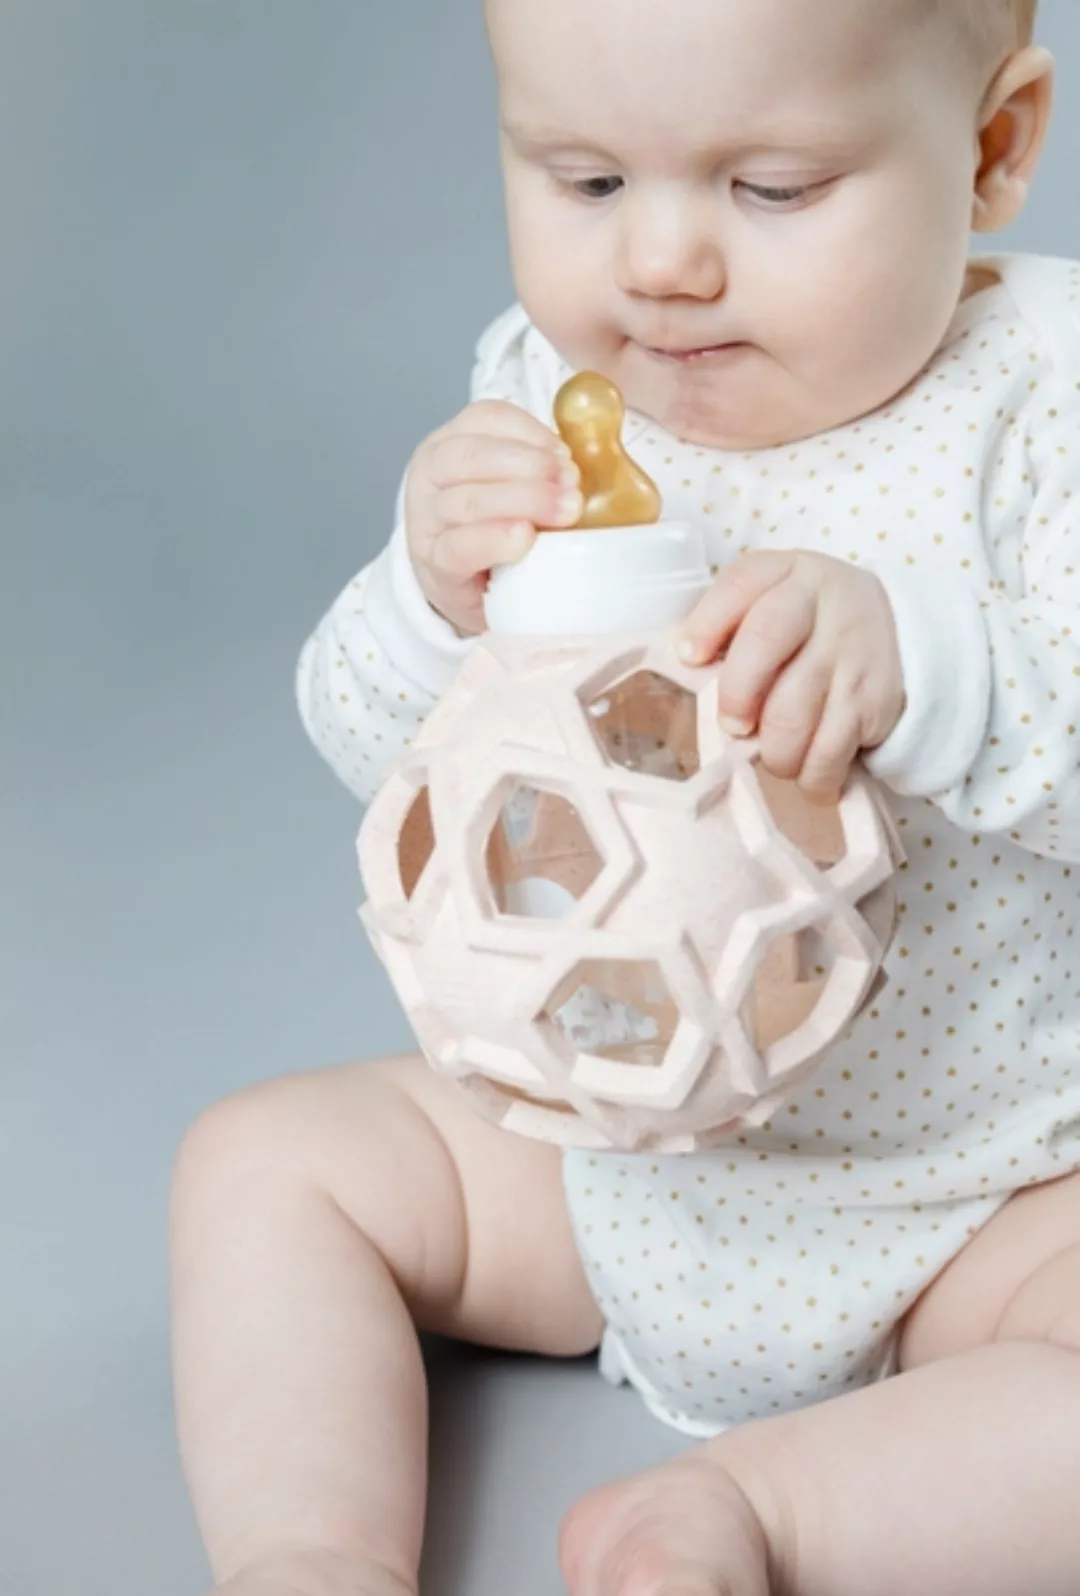 Hevea Baby Bottle - Babyfläschchen Aus Glas +Star Ball Upcycled - 3 Farben günstig online kaufen